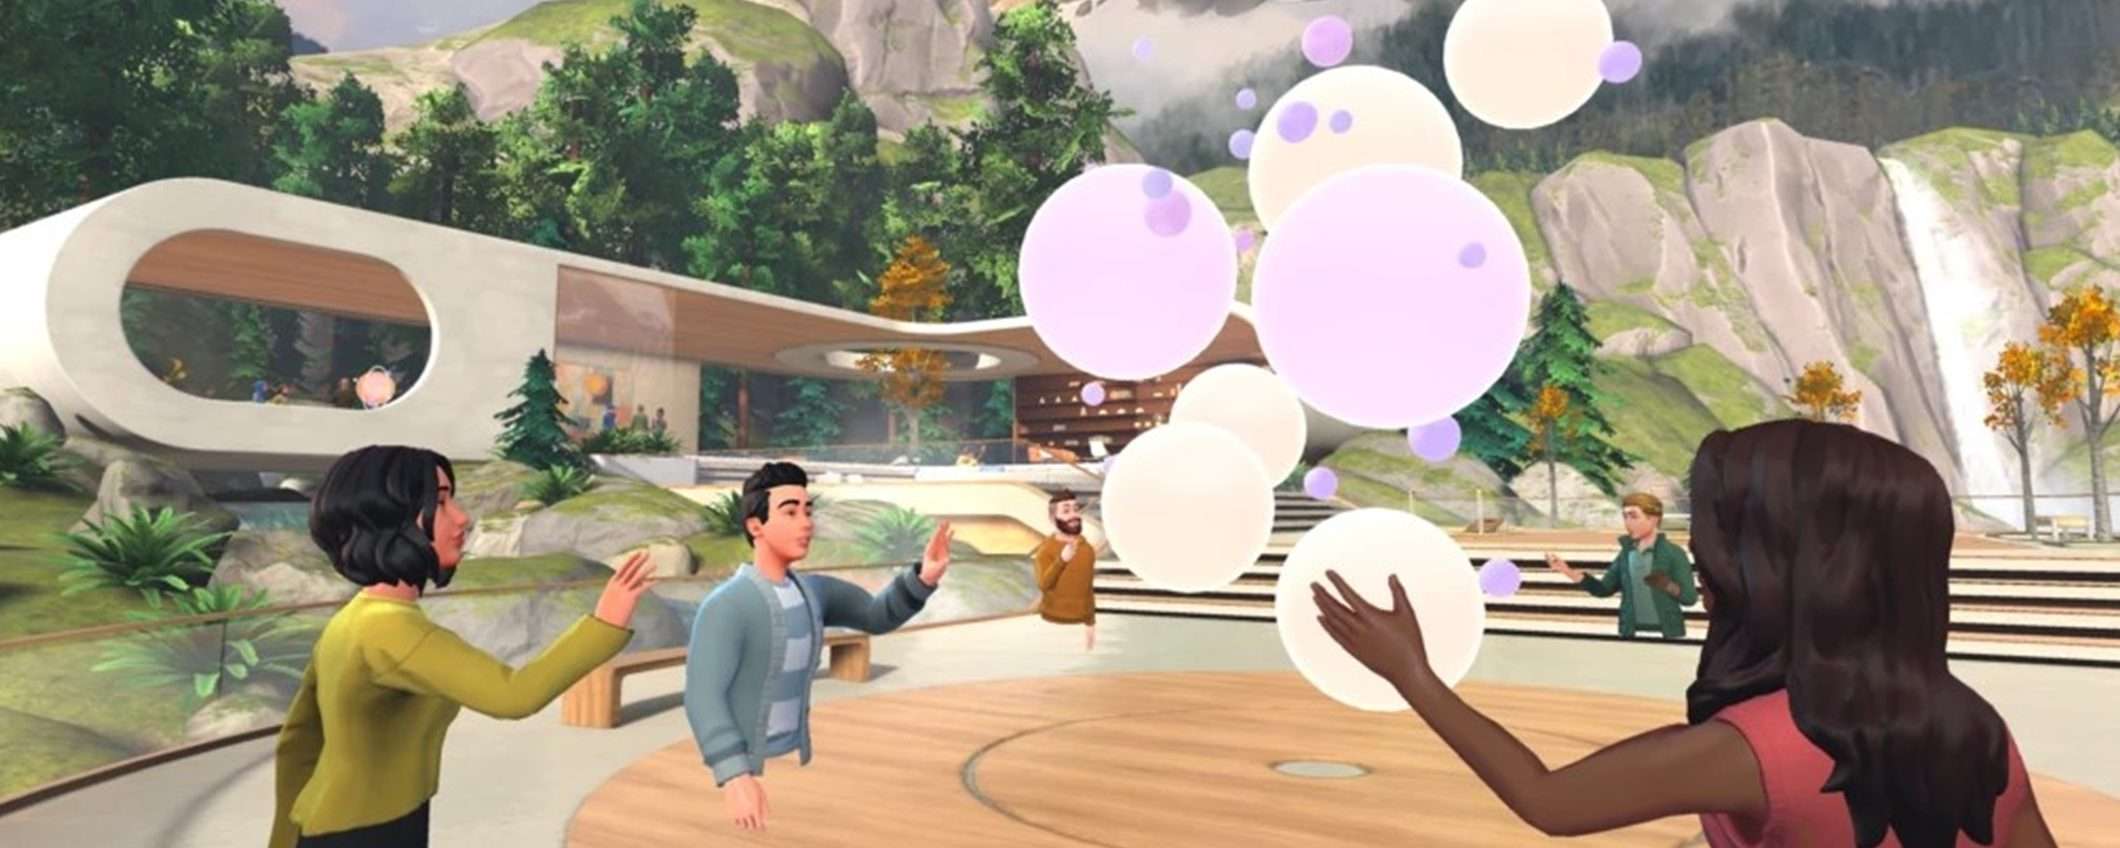 Microsoft Teams ora supporta le riunioni in 3D e VR